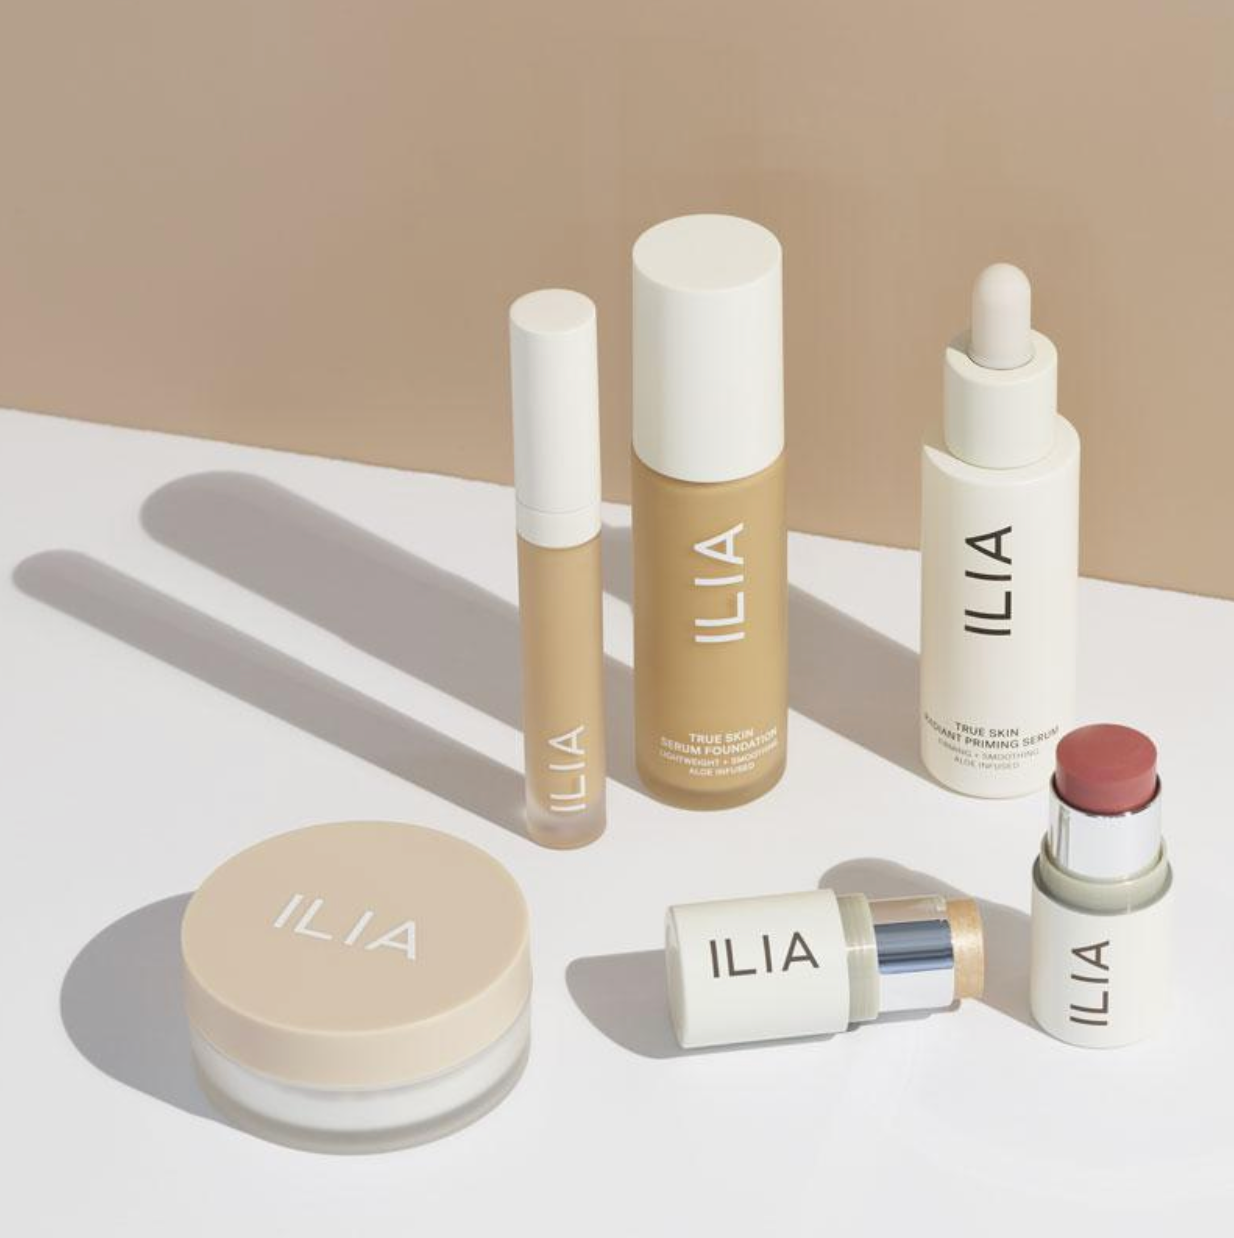 Ilia Beauty, a female founded make-up brand